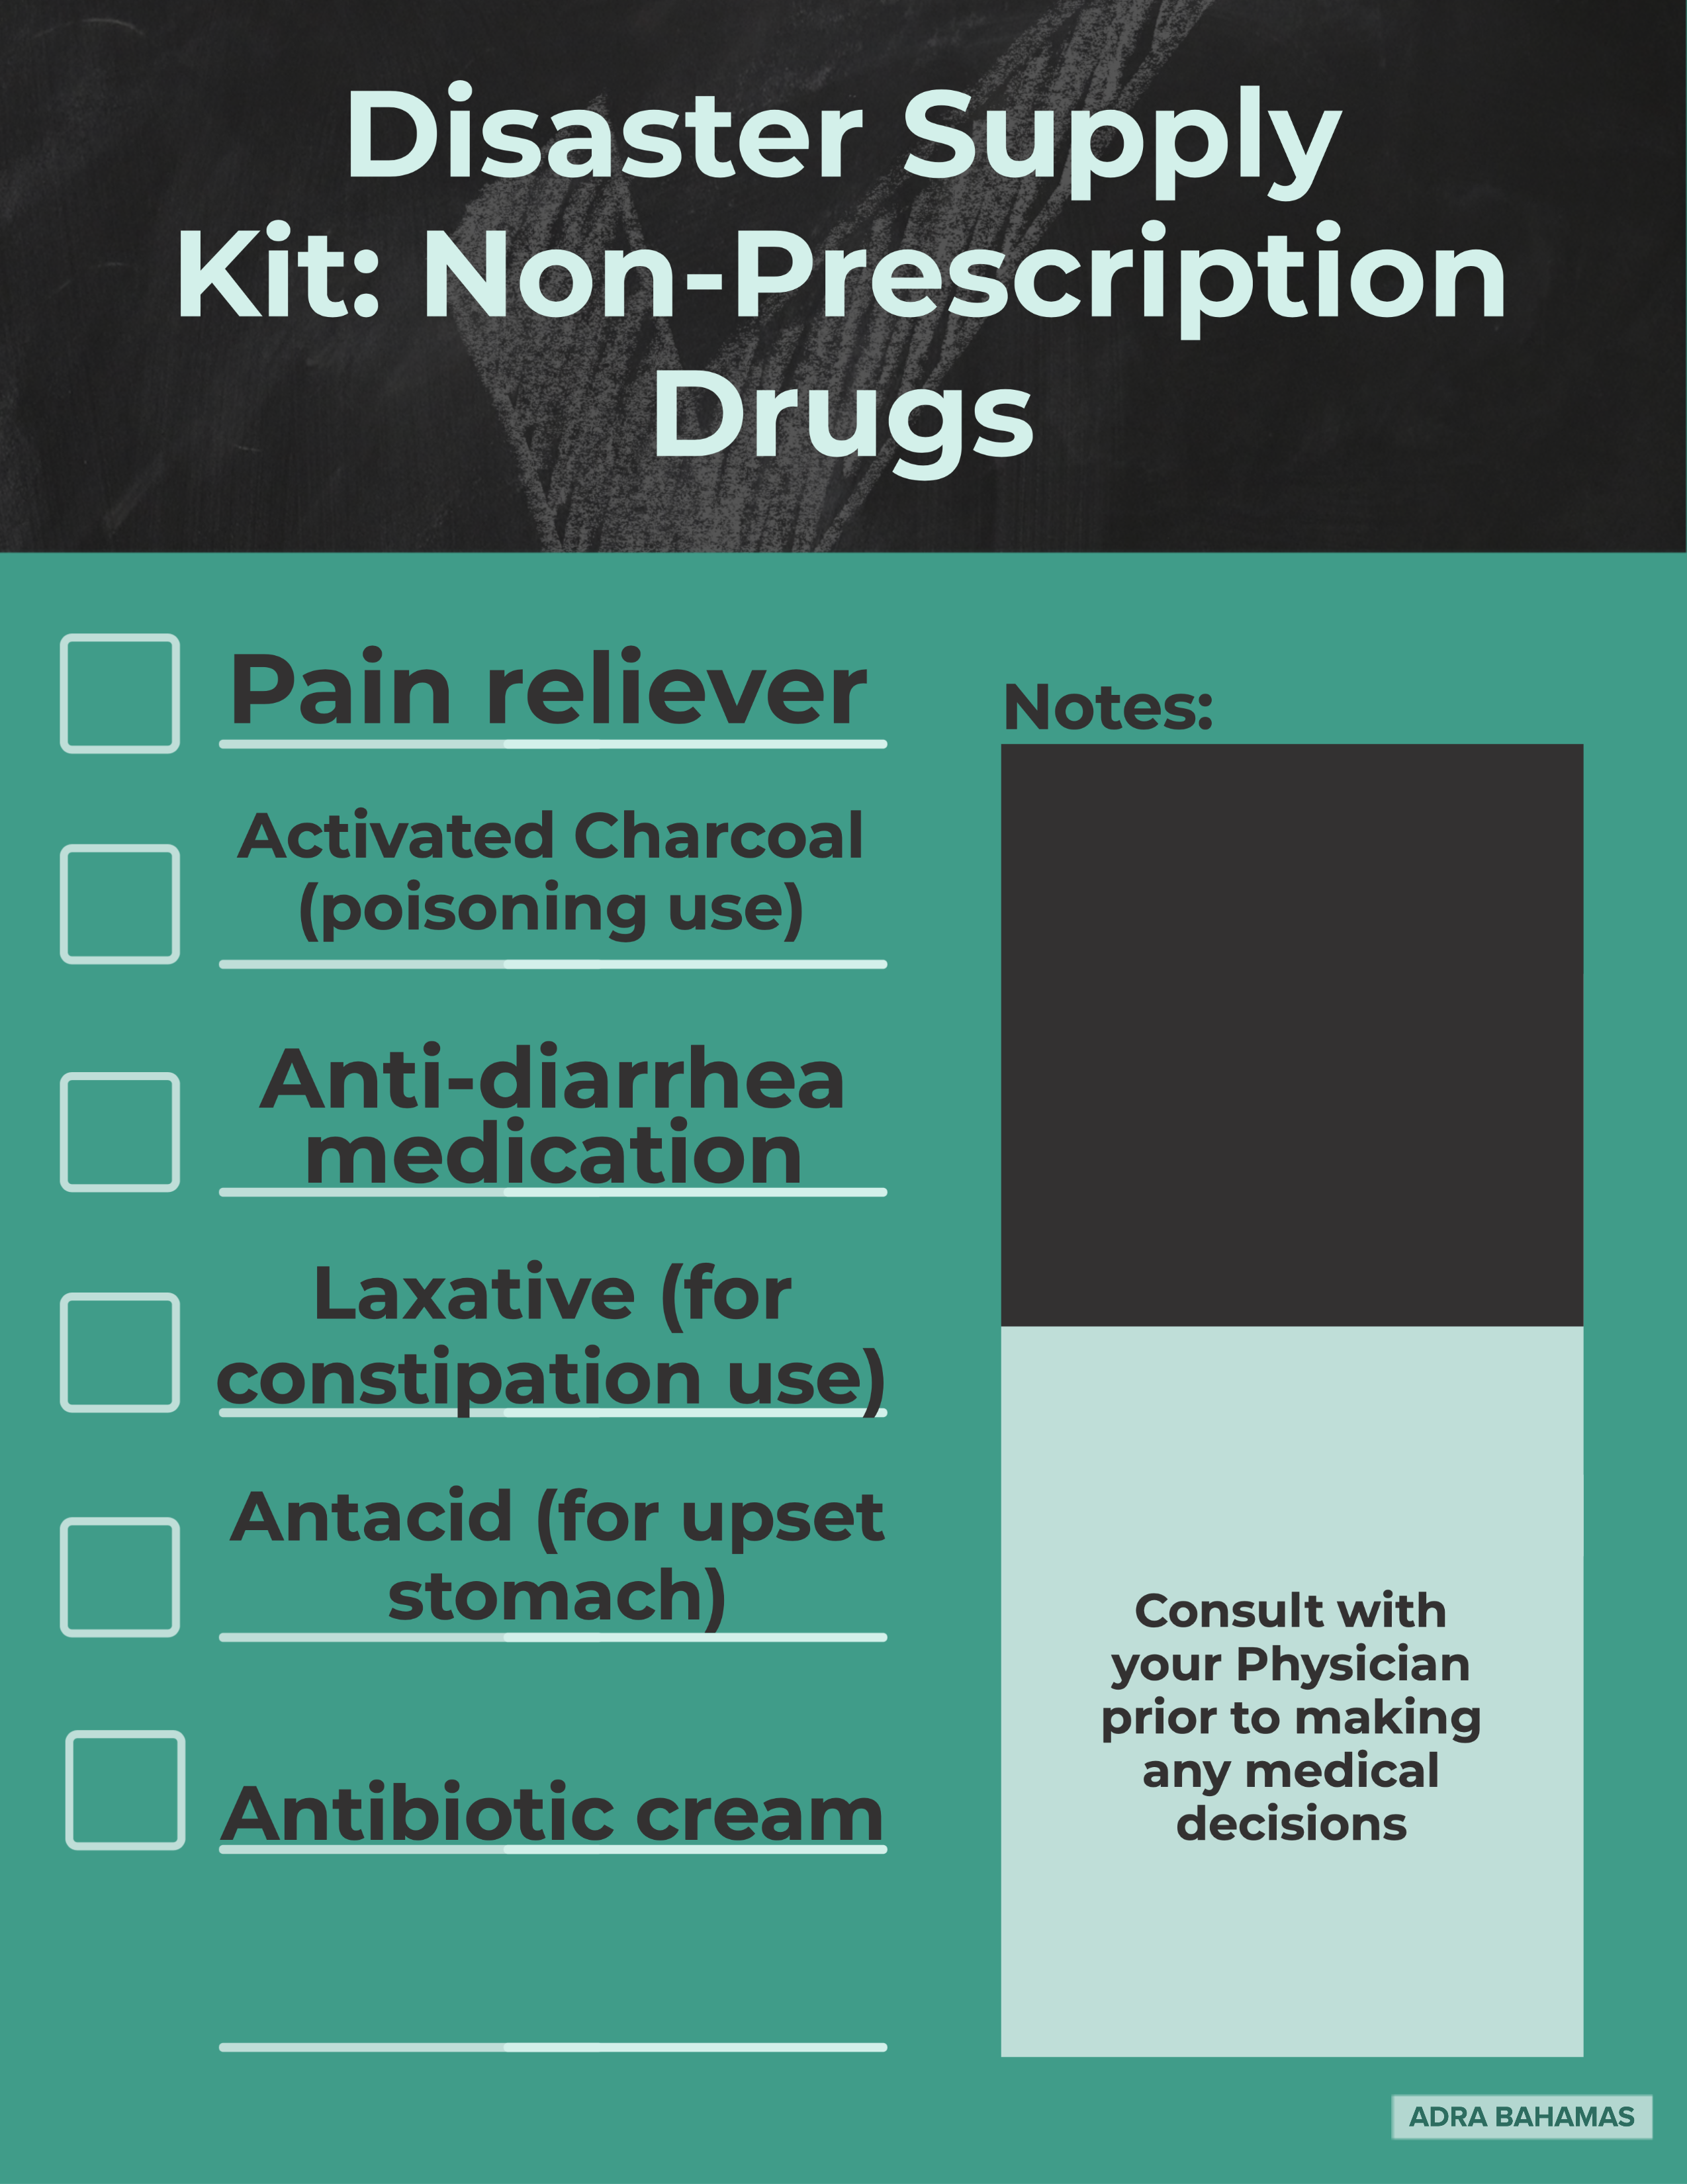 Non-prescription